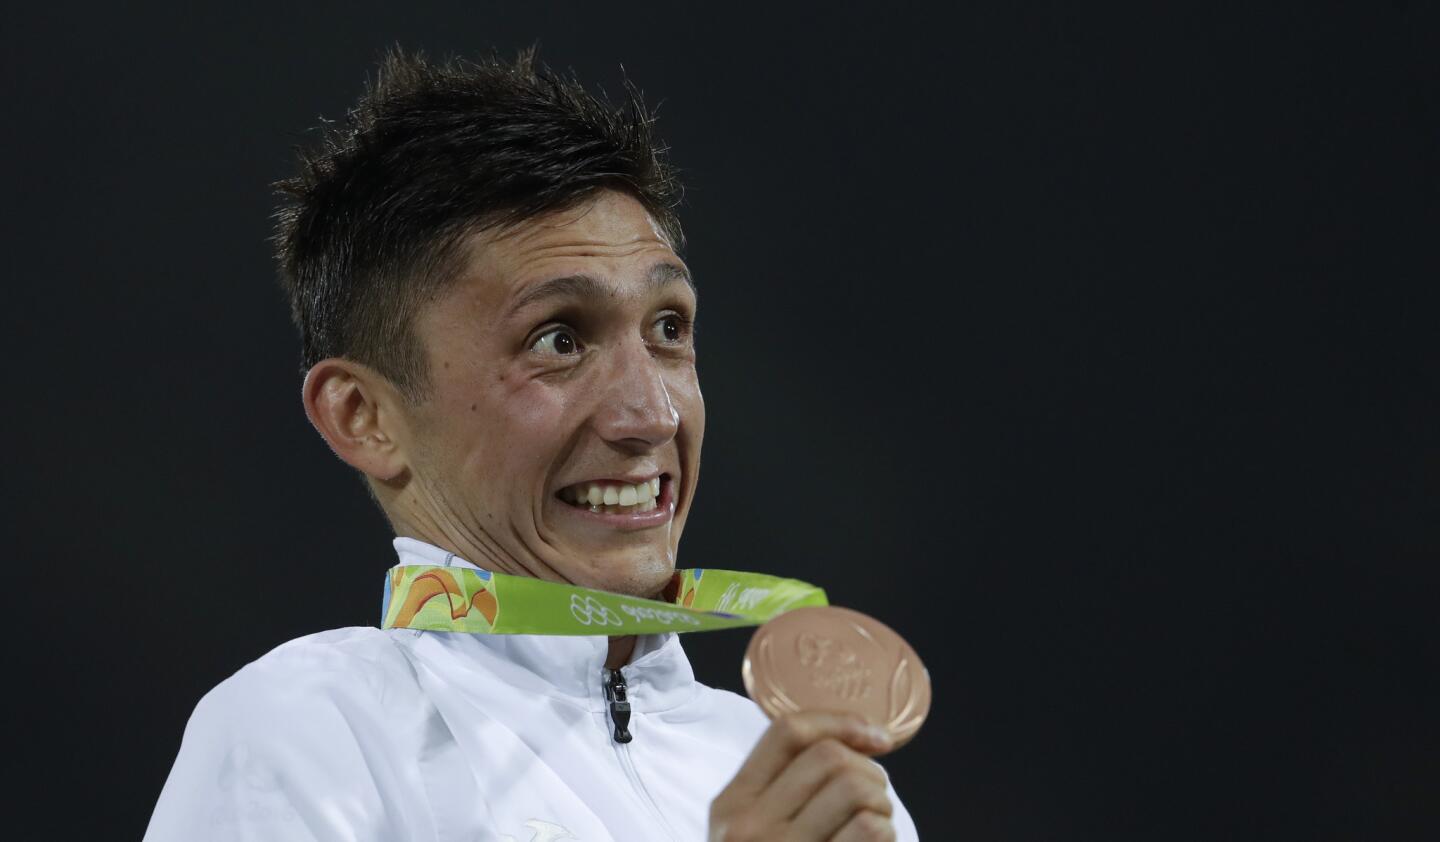 El mexicano Ismael Marcelo Hernández Uscanga sonríe al mostrar su medalla de bronce durante la ceremonia de premiación del pentatlón moderno individual de hombres en los Juegos Olímpicos de Río de Janeiro, Brasil.